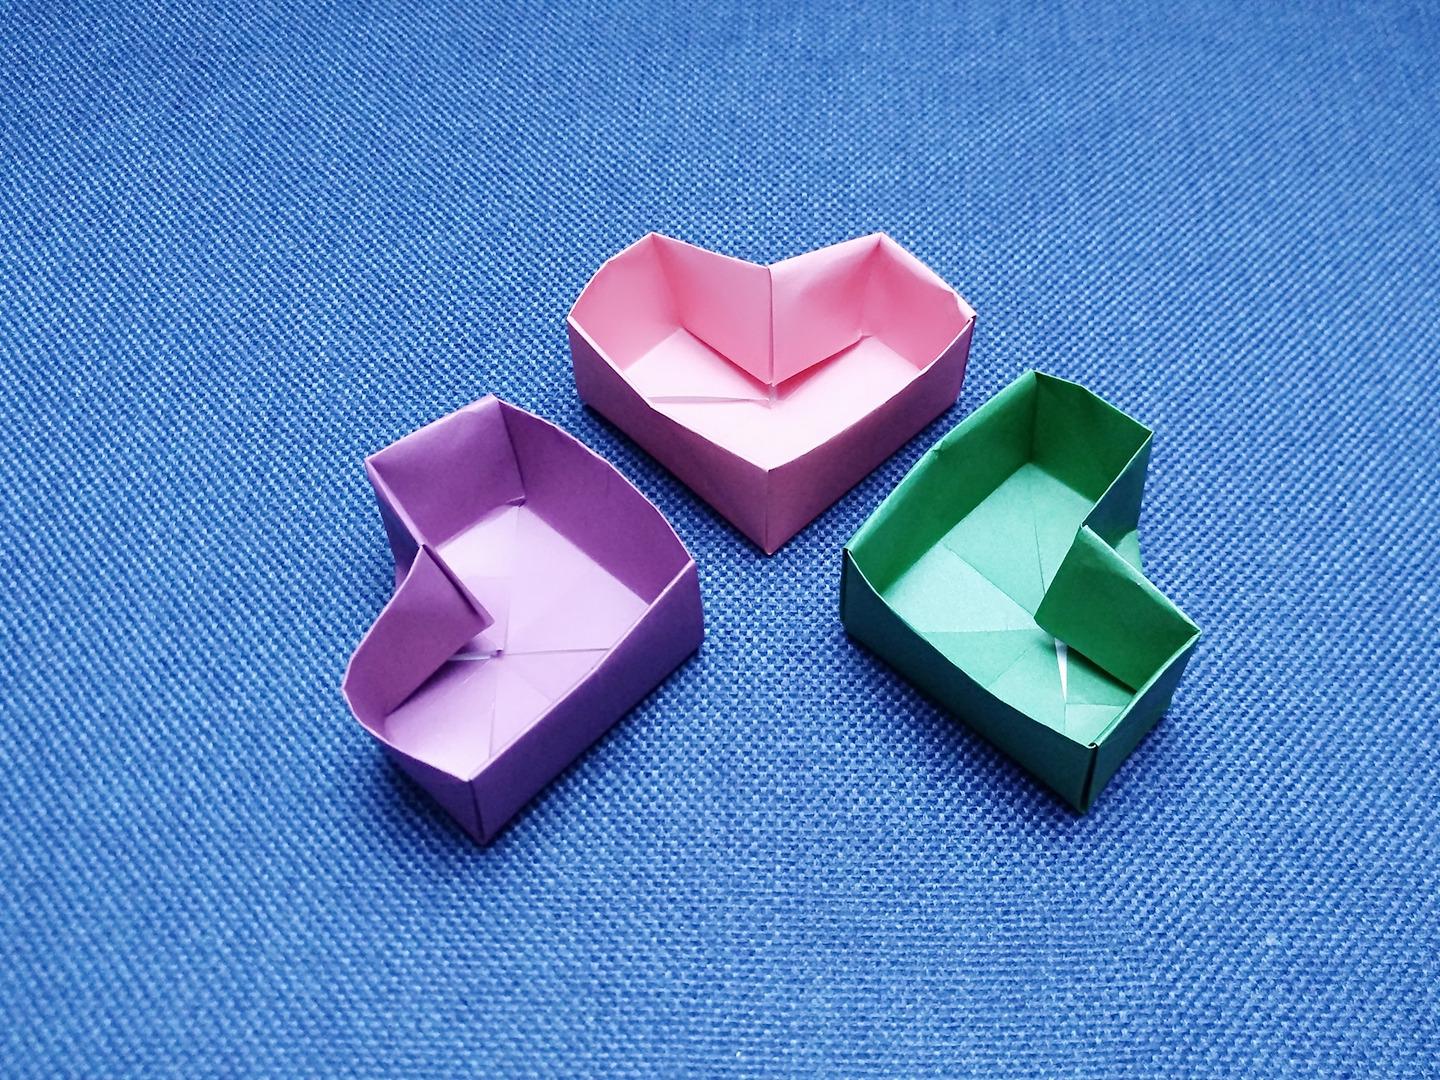 1折纸礼物盒的制作方法  02:14  来源:秒懂百科-折纸礼物盒几分钟